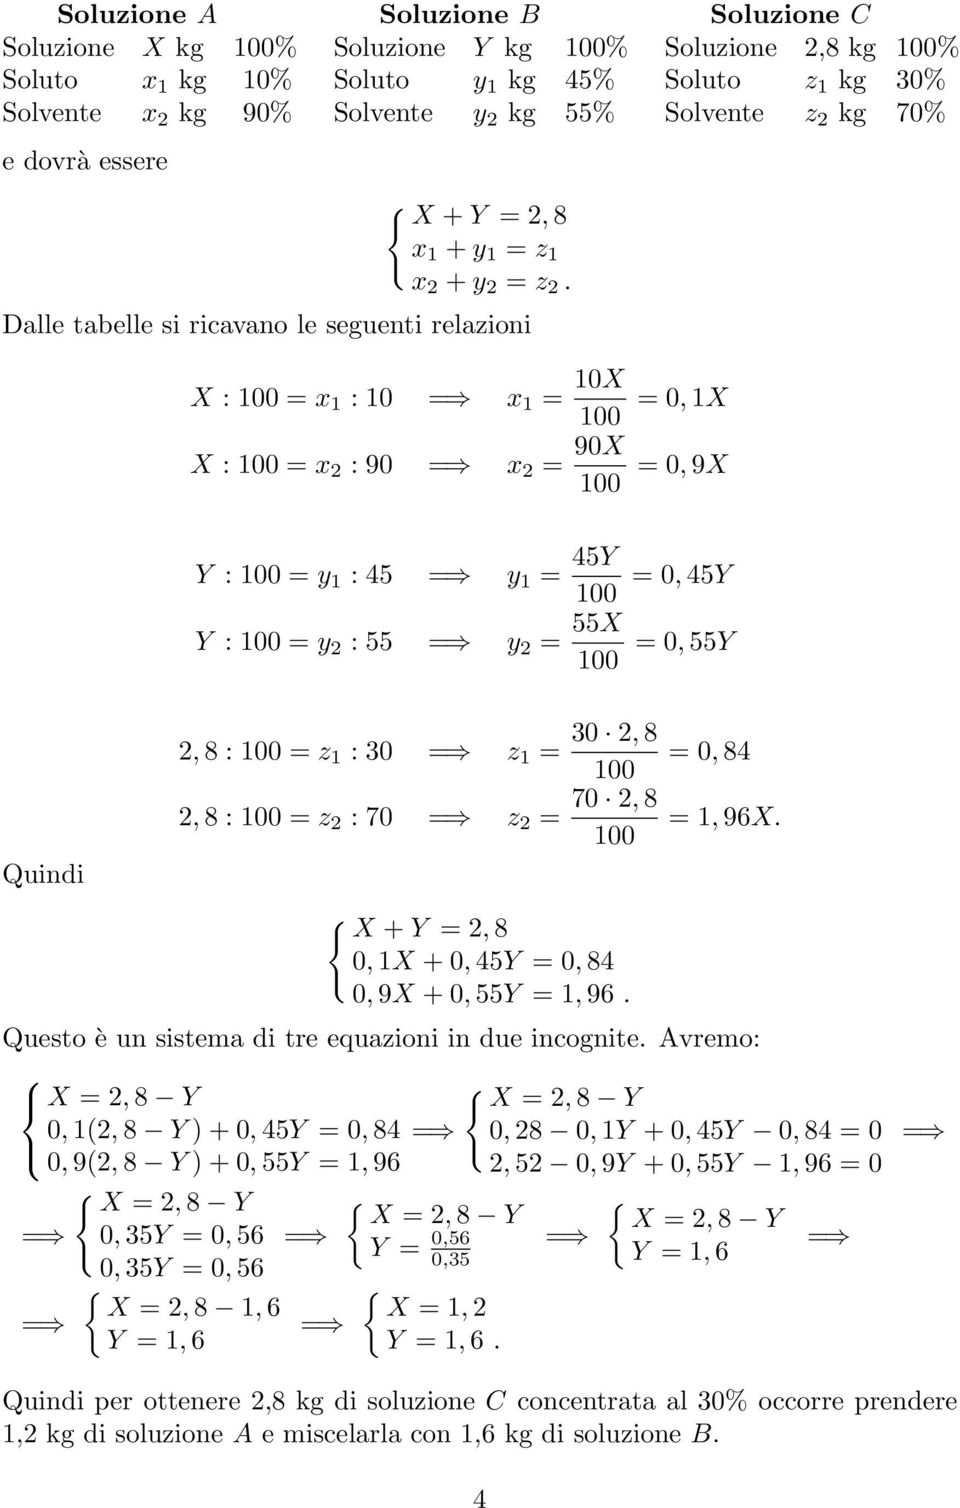 Dalle tabelle si ricavano le seguenti relazioni X : = x 1 : 10 = x 1 = 10X X : = x 2 : 90 = x 2 = 90X = 0, 1X = 0, 9X Y : = y 1 : 45 = y 1 = 45Y Y : = y 2 : 55 = y 2 = 55X = 0, 45Y = 0, 55Y Quindi 2,